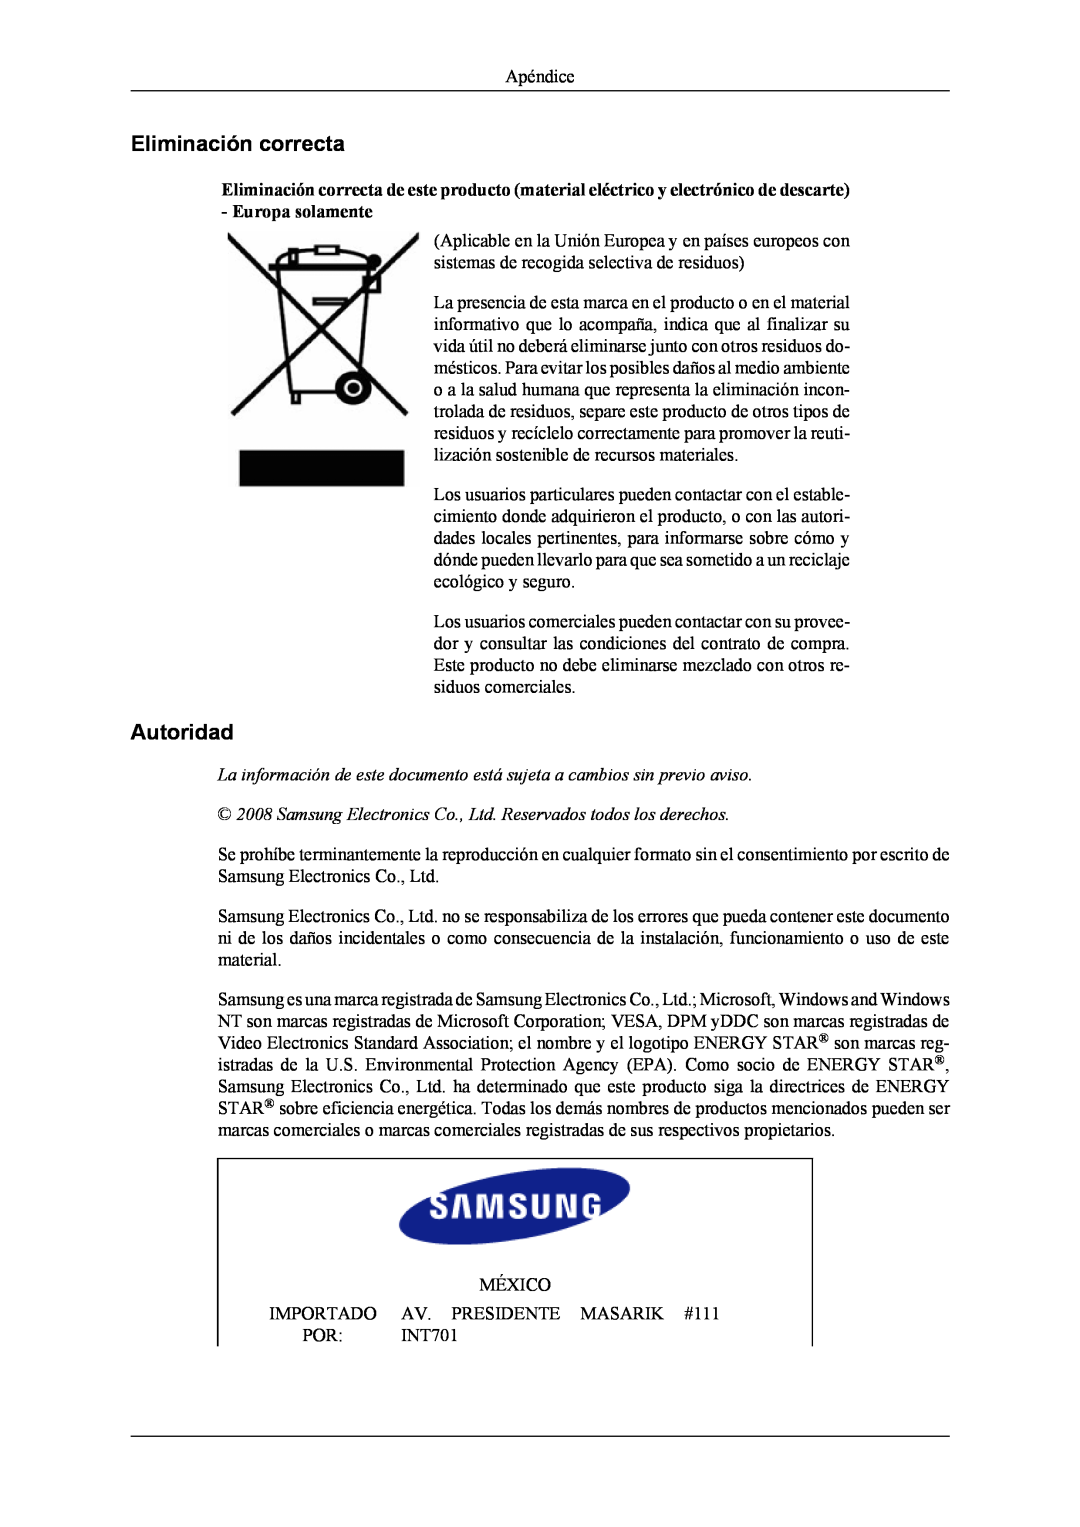 Samsung LS19CFEKF/EN, LS19CFVKF/EN, LS19CFVKH/EN manual Eliminación correcta, Autoridad 